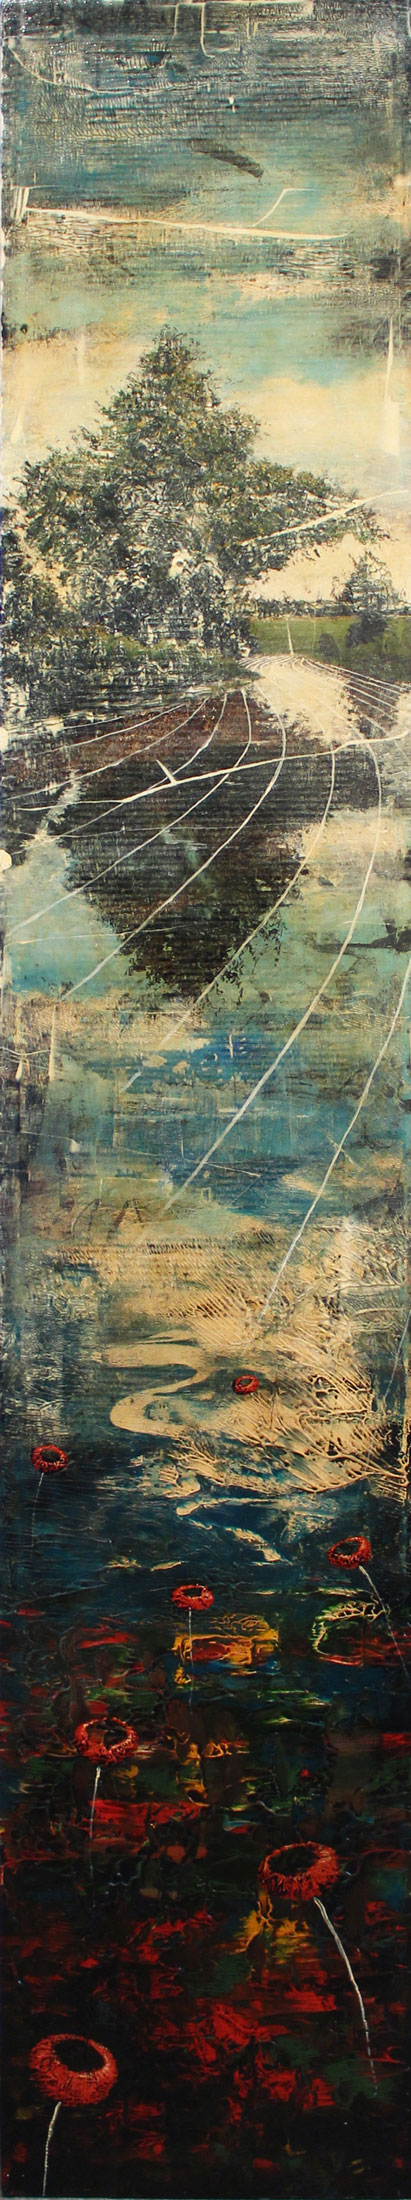 FORBICI JERNEJ, Water, 2018, olio e acrilico su tela, 200 x 36 cm